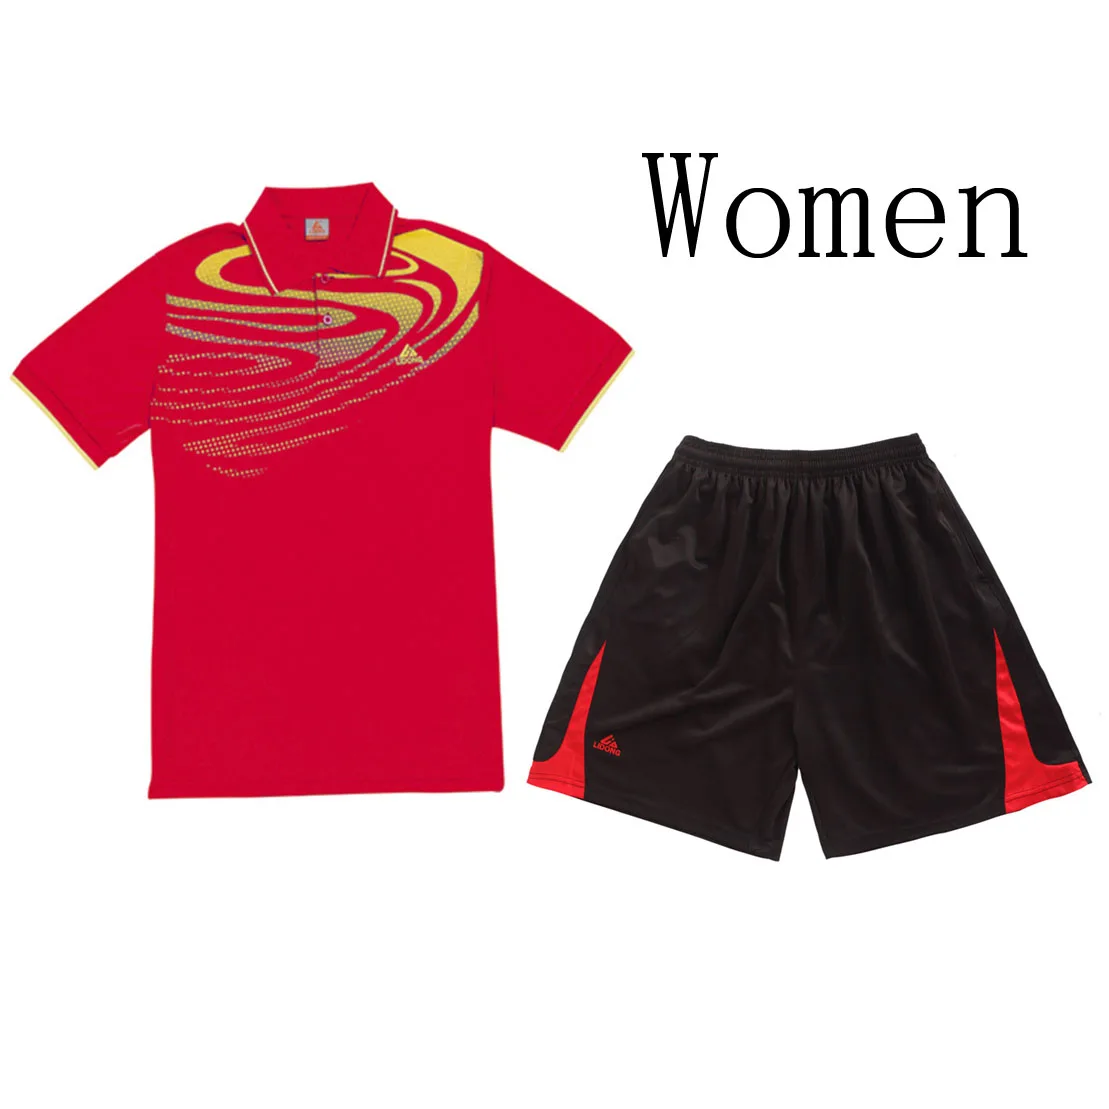 Костюмы для бадминтона для мужчин/женщин, настольные теннисные костюмы, теннисные майки с отложным воротником+ шорты, одежда для влюбленных pingpong Джерси+ шорты - Цвет: Women Red Set